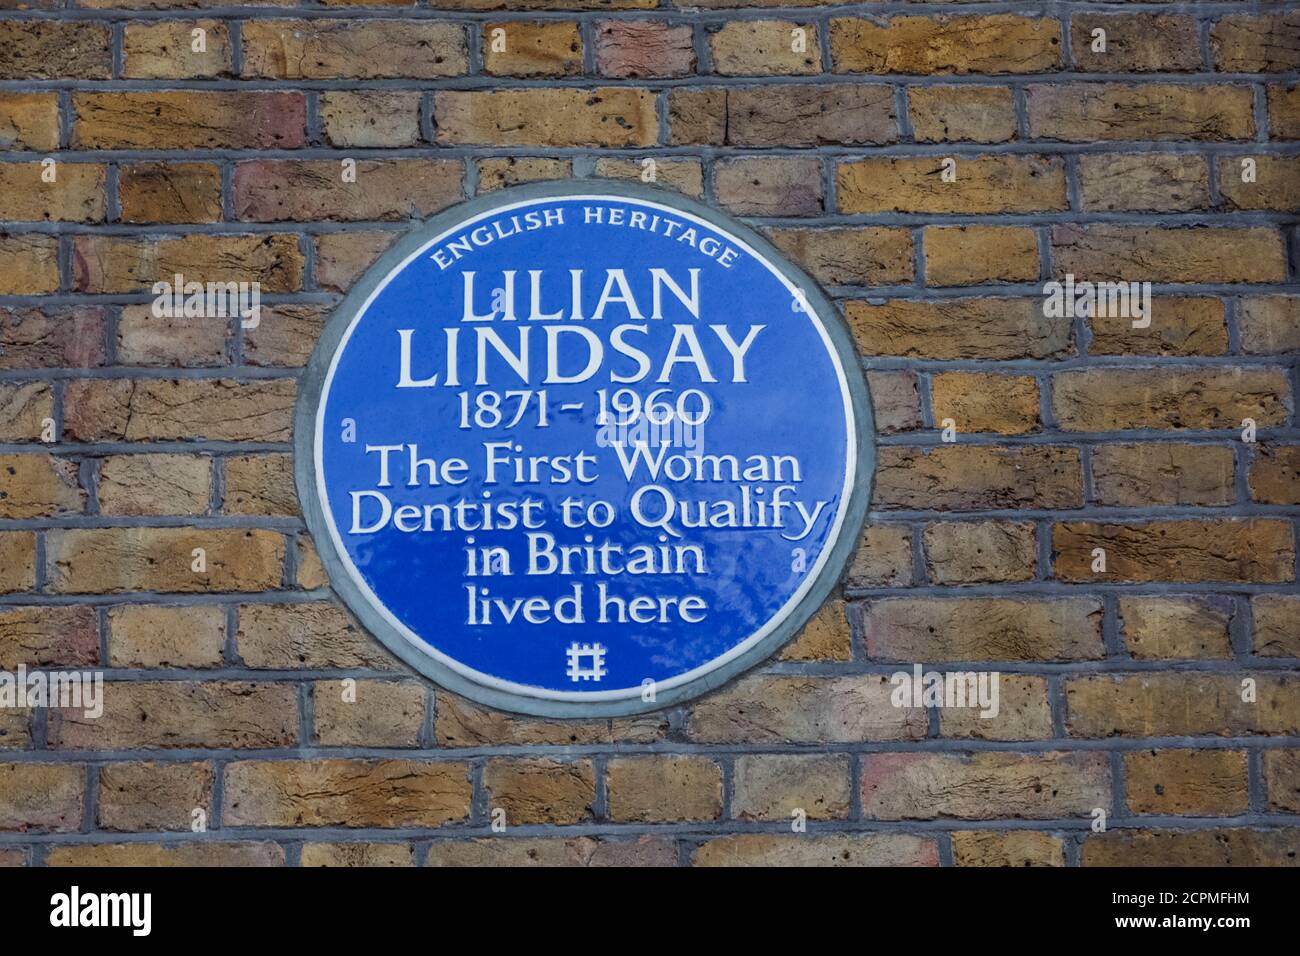 Inghilterra, Londra, Westminster, Bloomsbury, Russel Square, placca blu sull'ex casa di Lilian Lindsay la prima donna dentista a qualificarsi in Bretagna Foto Stock